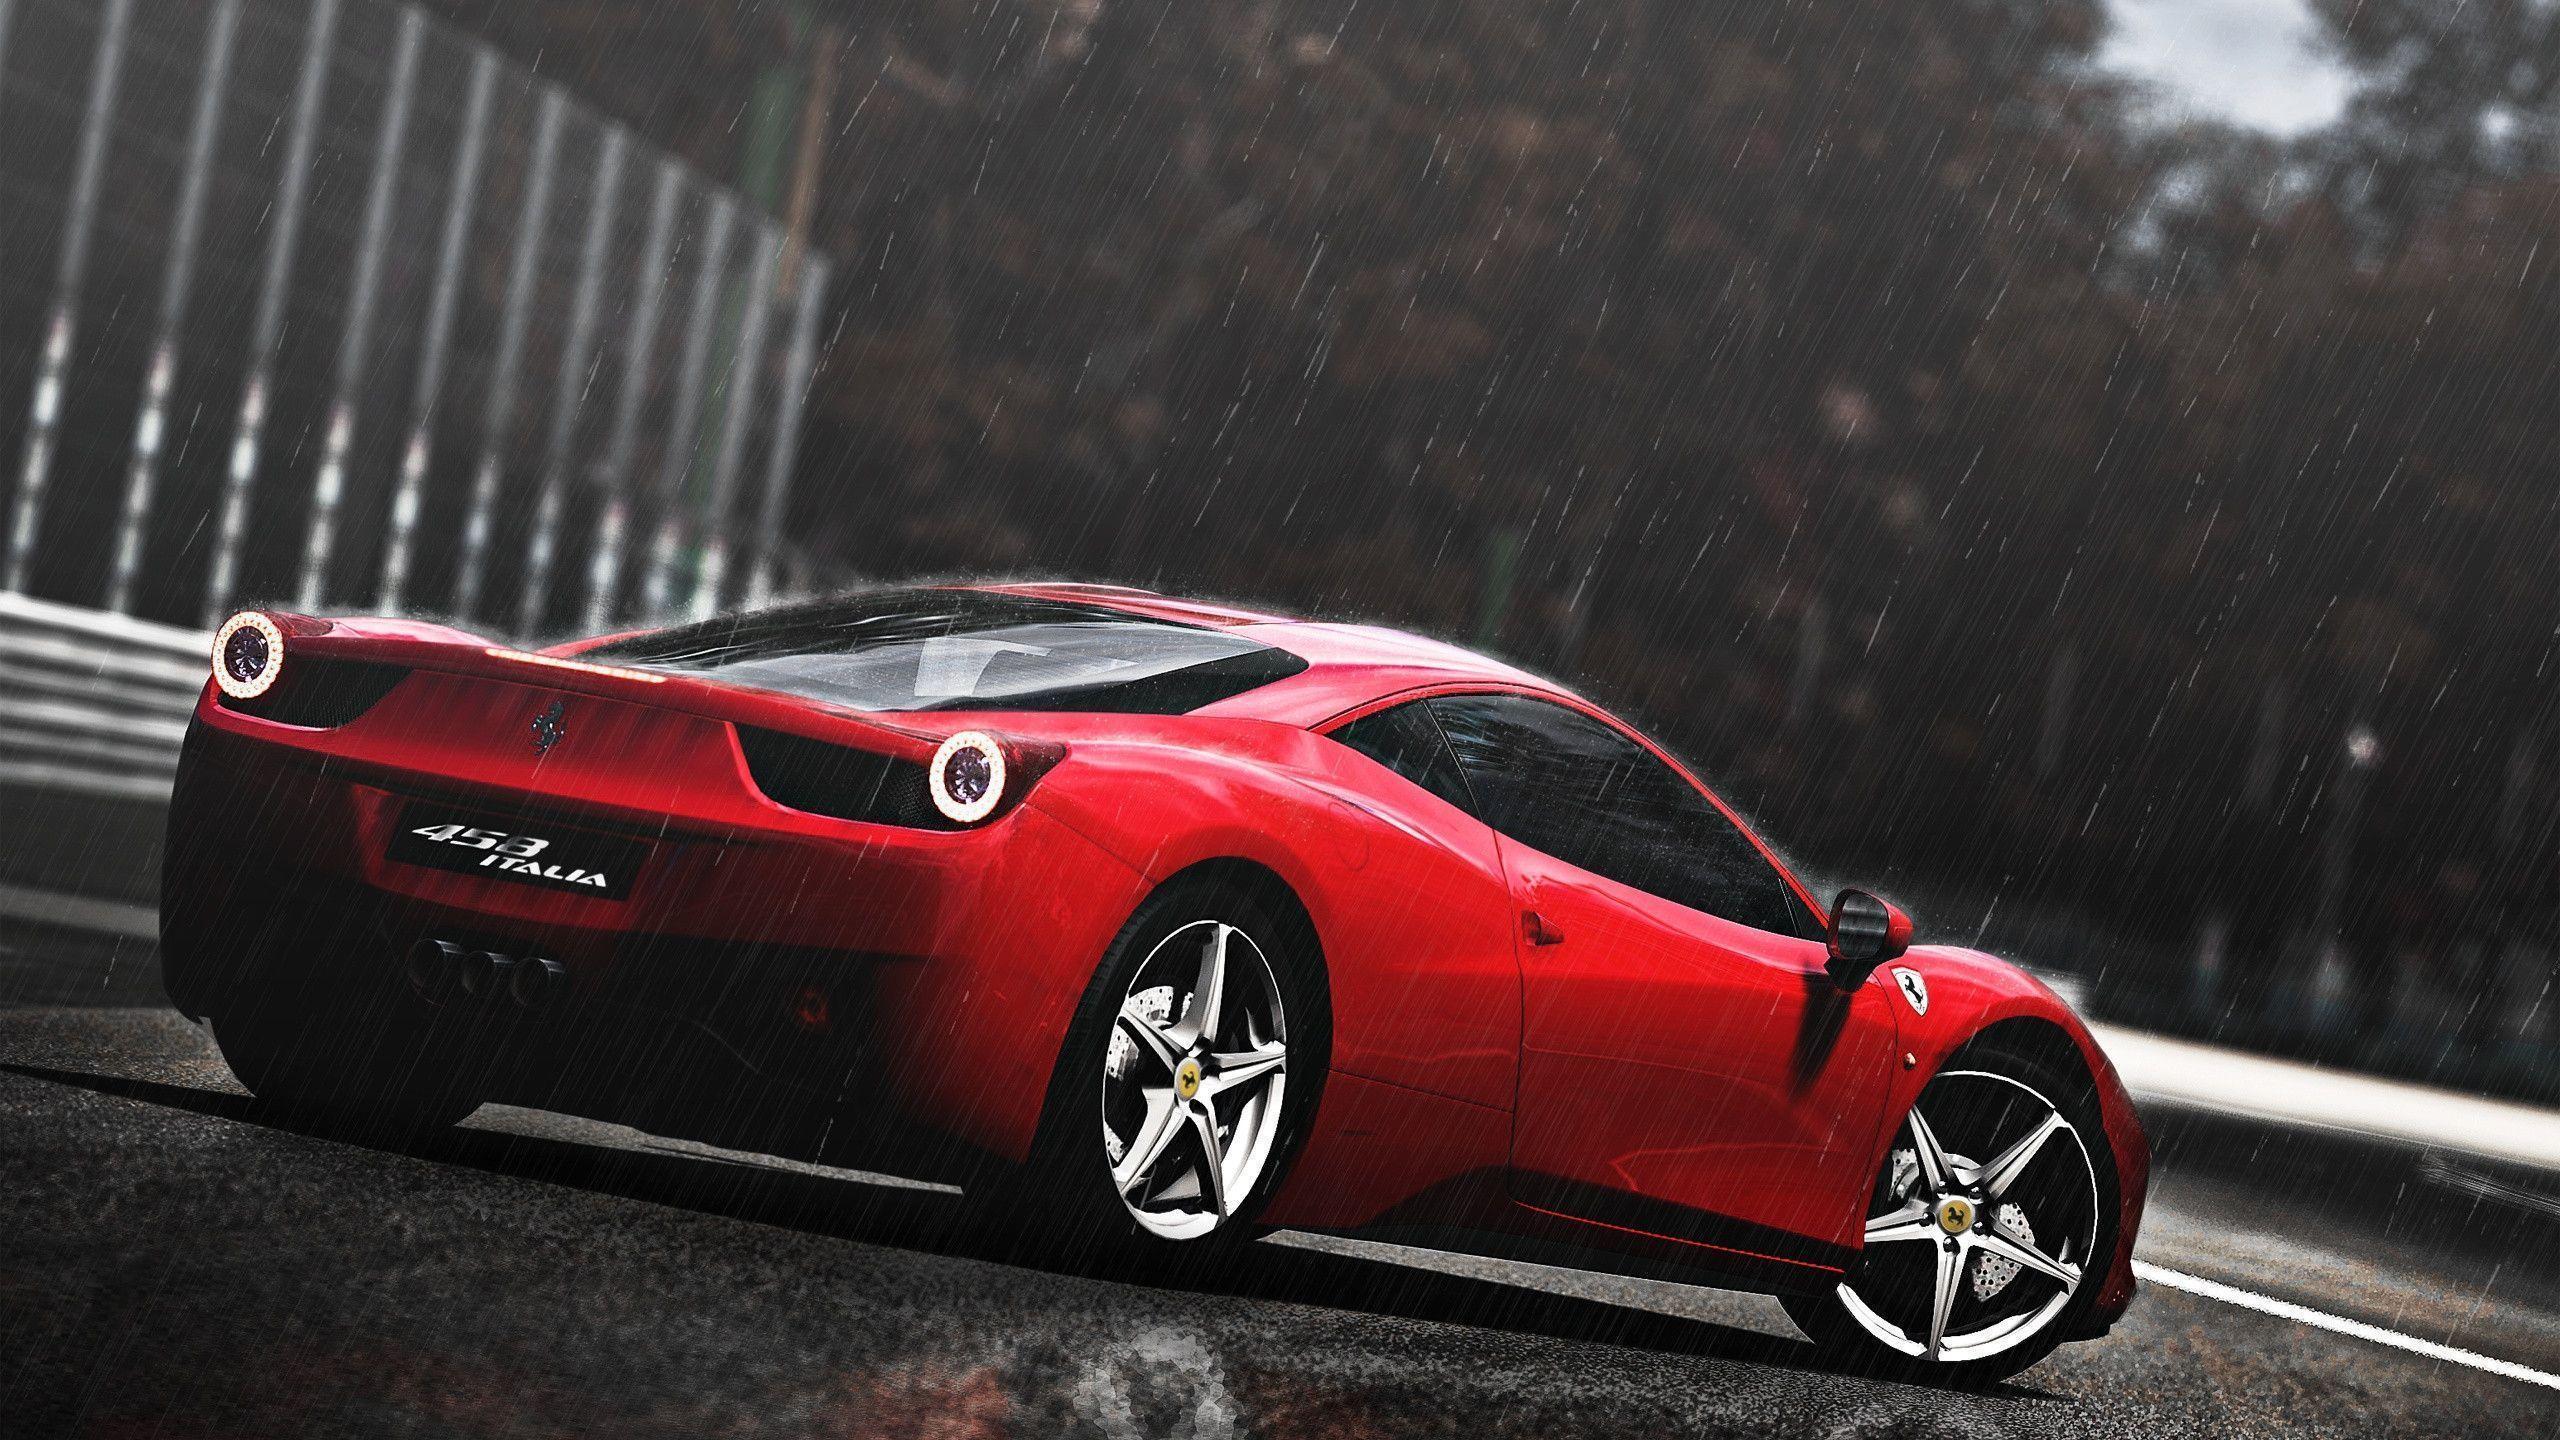 Ferrari 458 Italia Wallpaper 34 Background. Wallruru